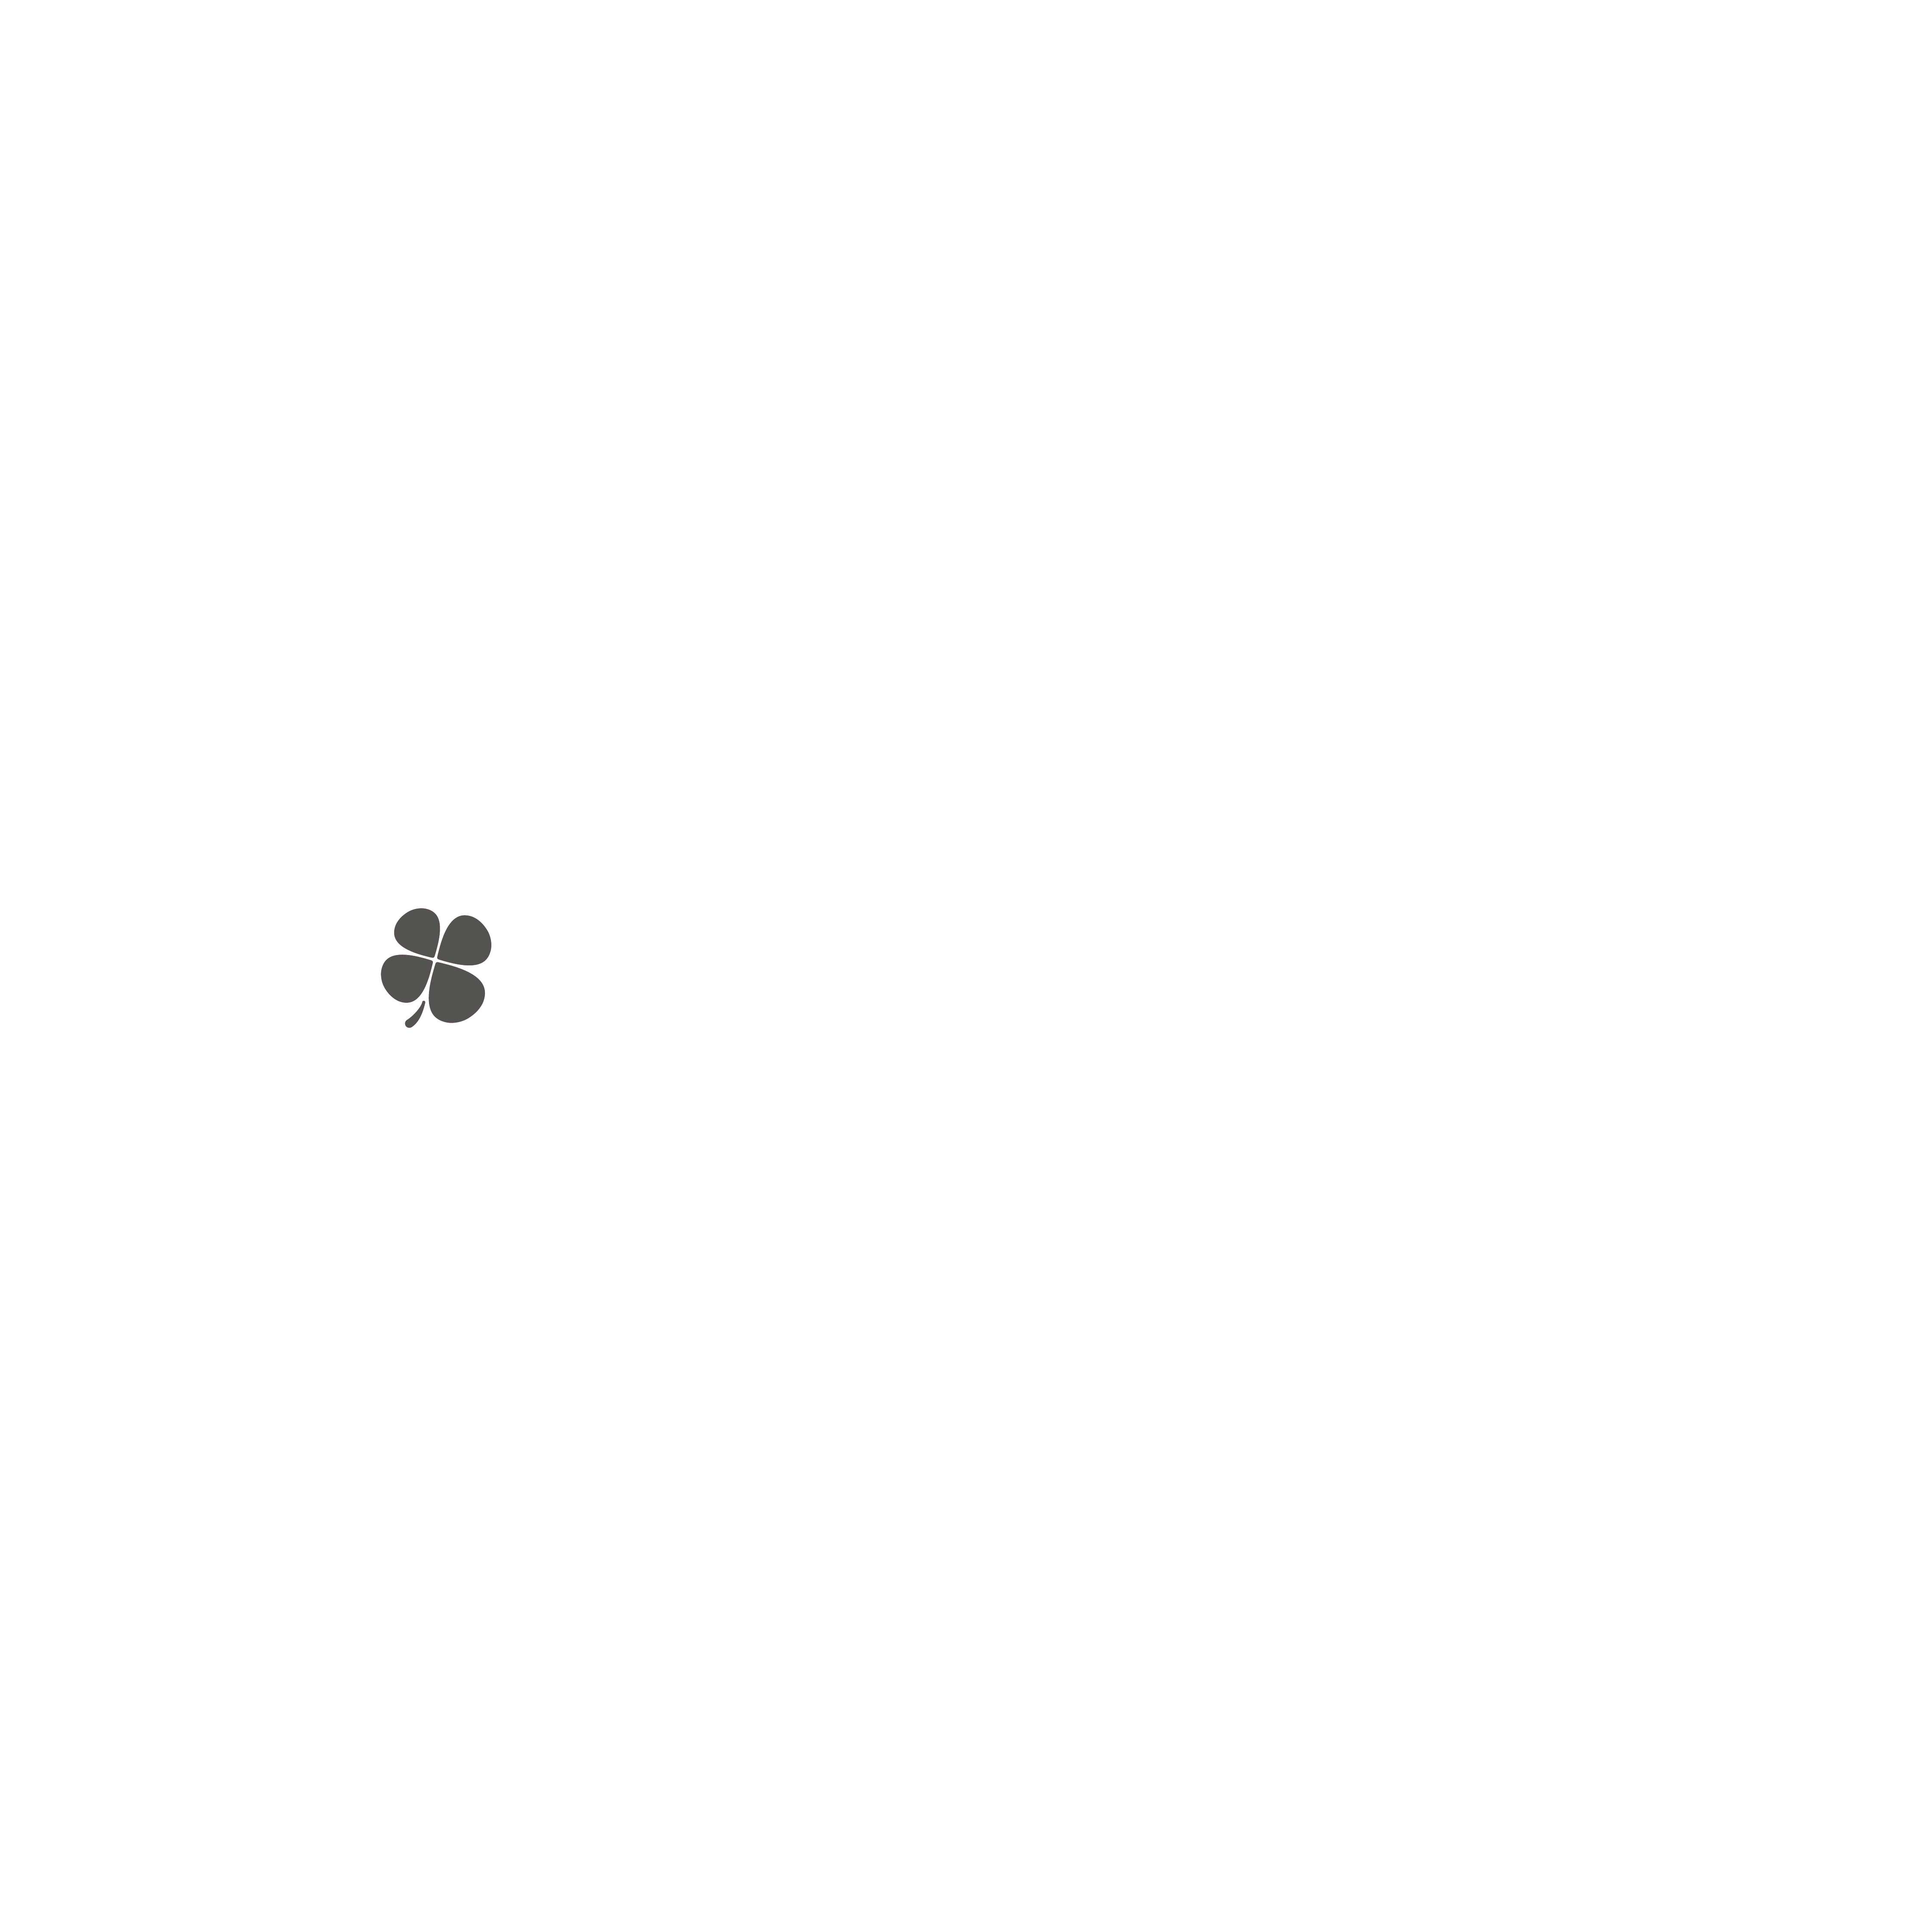 Changement_Ergalis_Medical_Baseline_Blanc_Gris